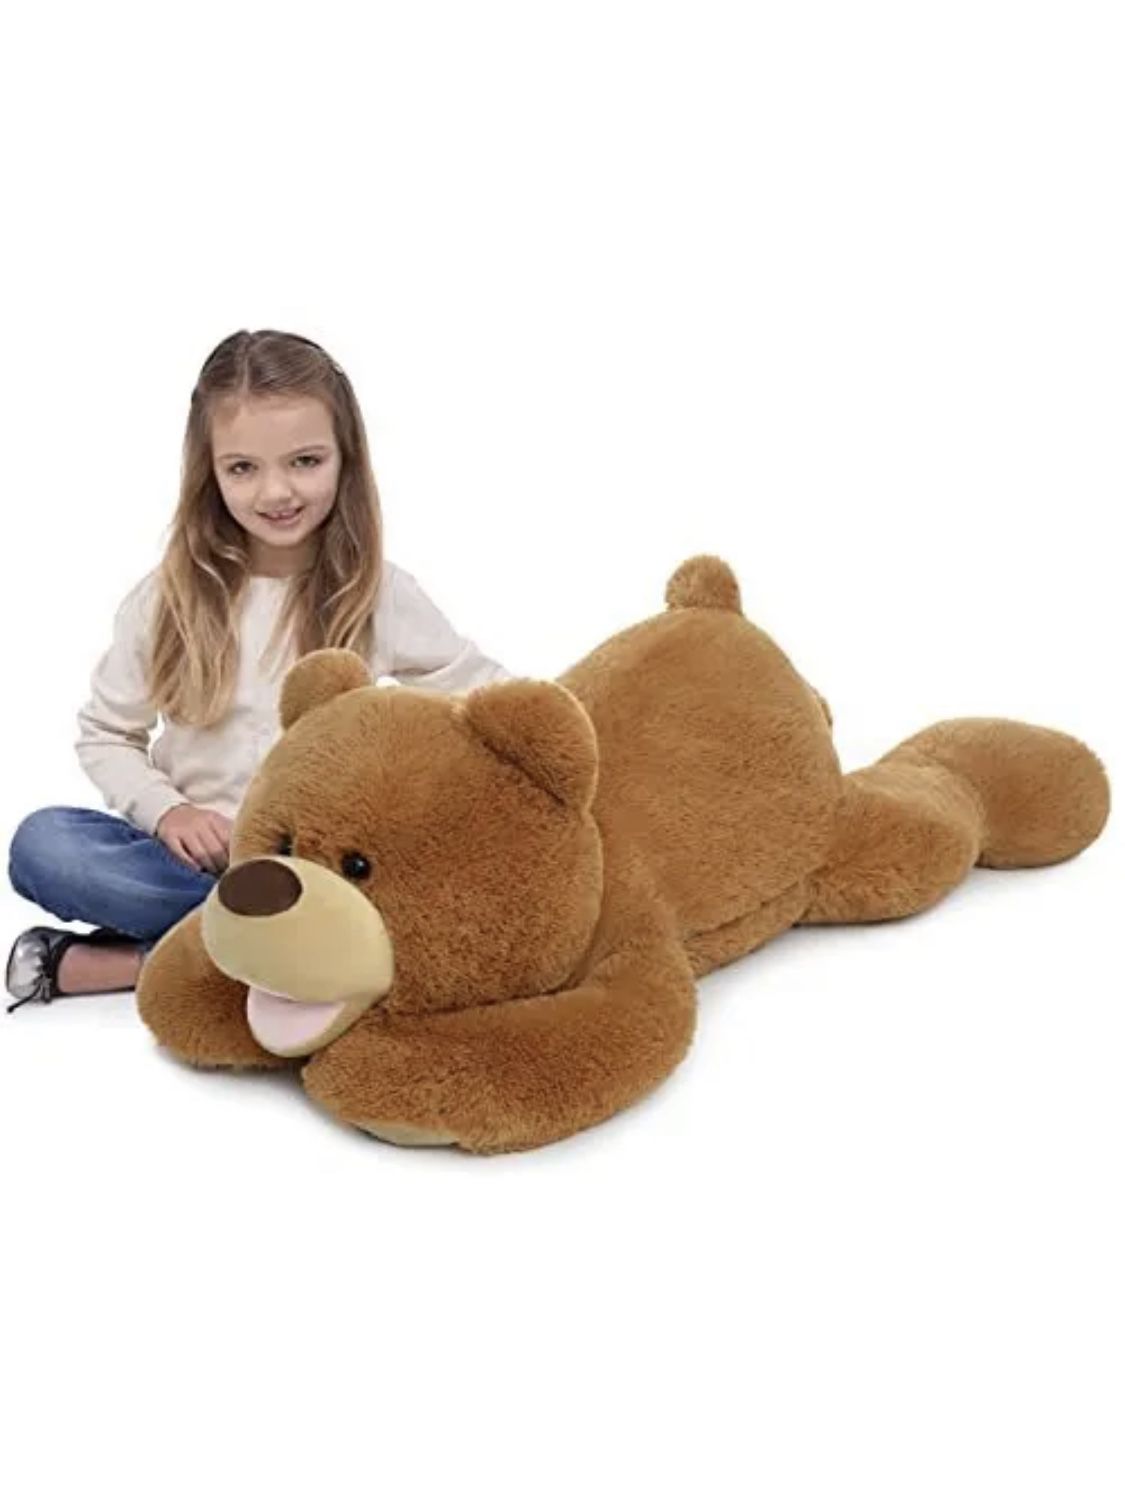 Giant Teddy Bear Stuffed Animal,Cute Lying 37.4 inch Teddy Bear Hugging 